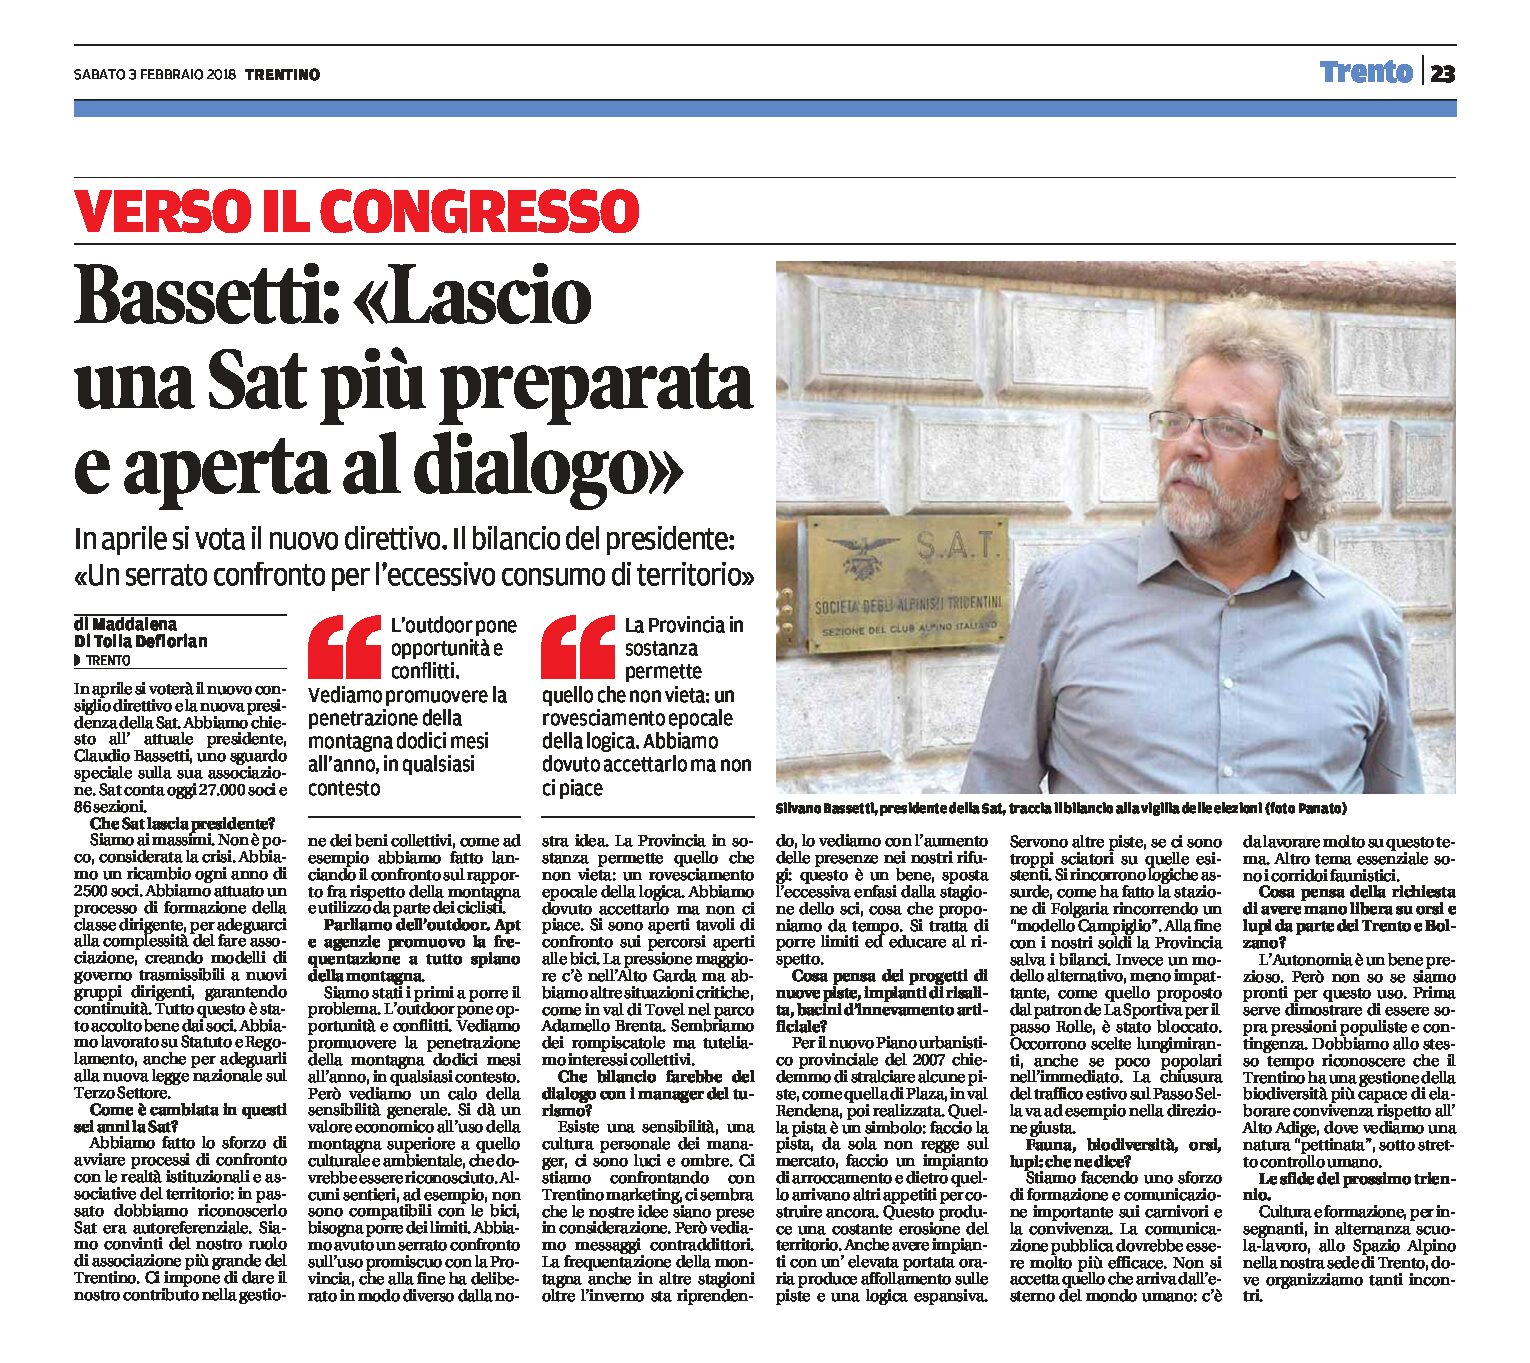 Sat: intervista a Bassetti. Il bilancio del presidente. In aprile il nuovo direttivo